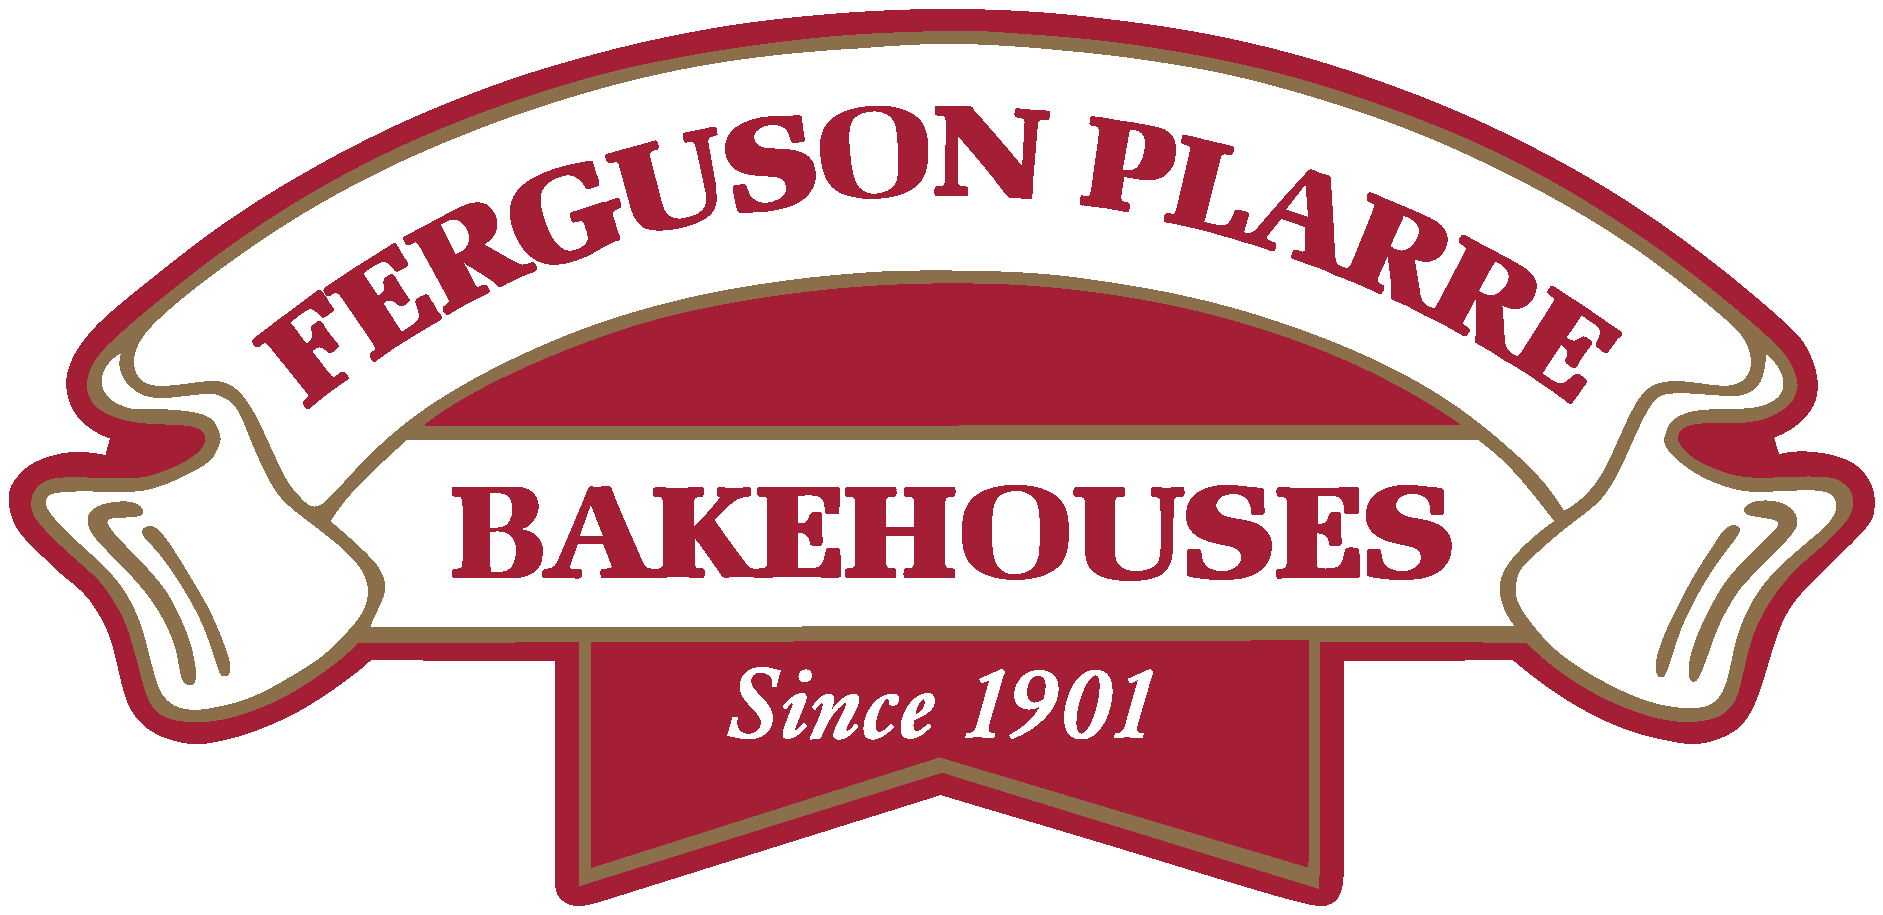 Ferguson Plarre Bakehouses Logo Vector